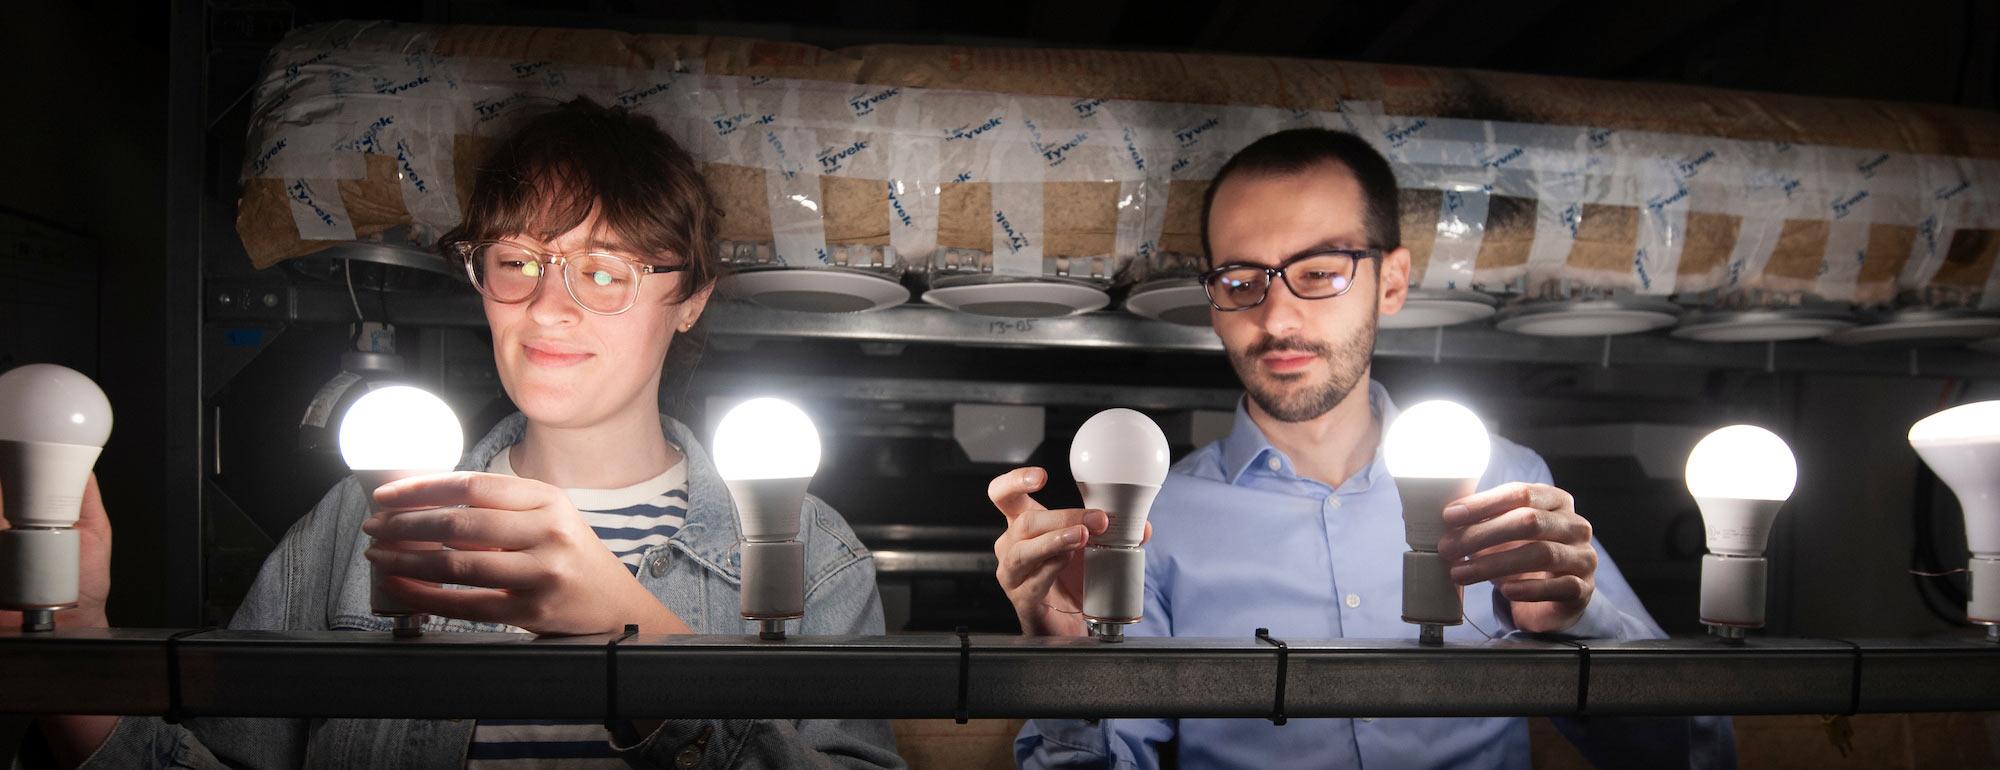 Two students adjusting several LED lights